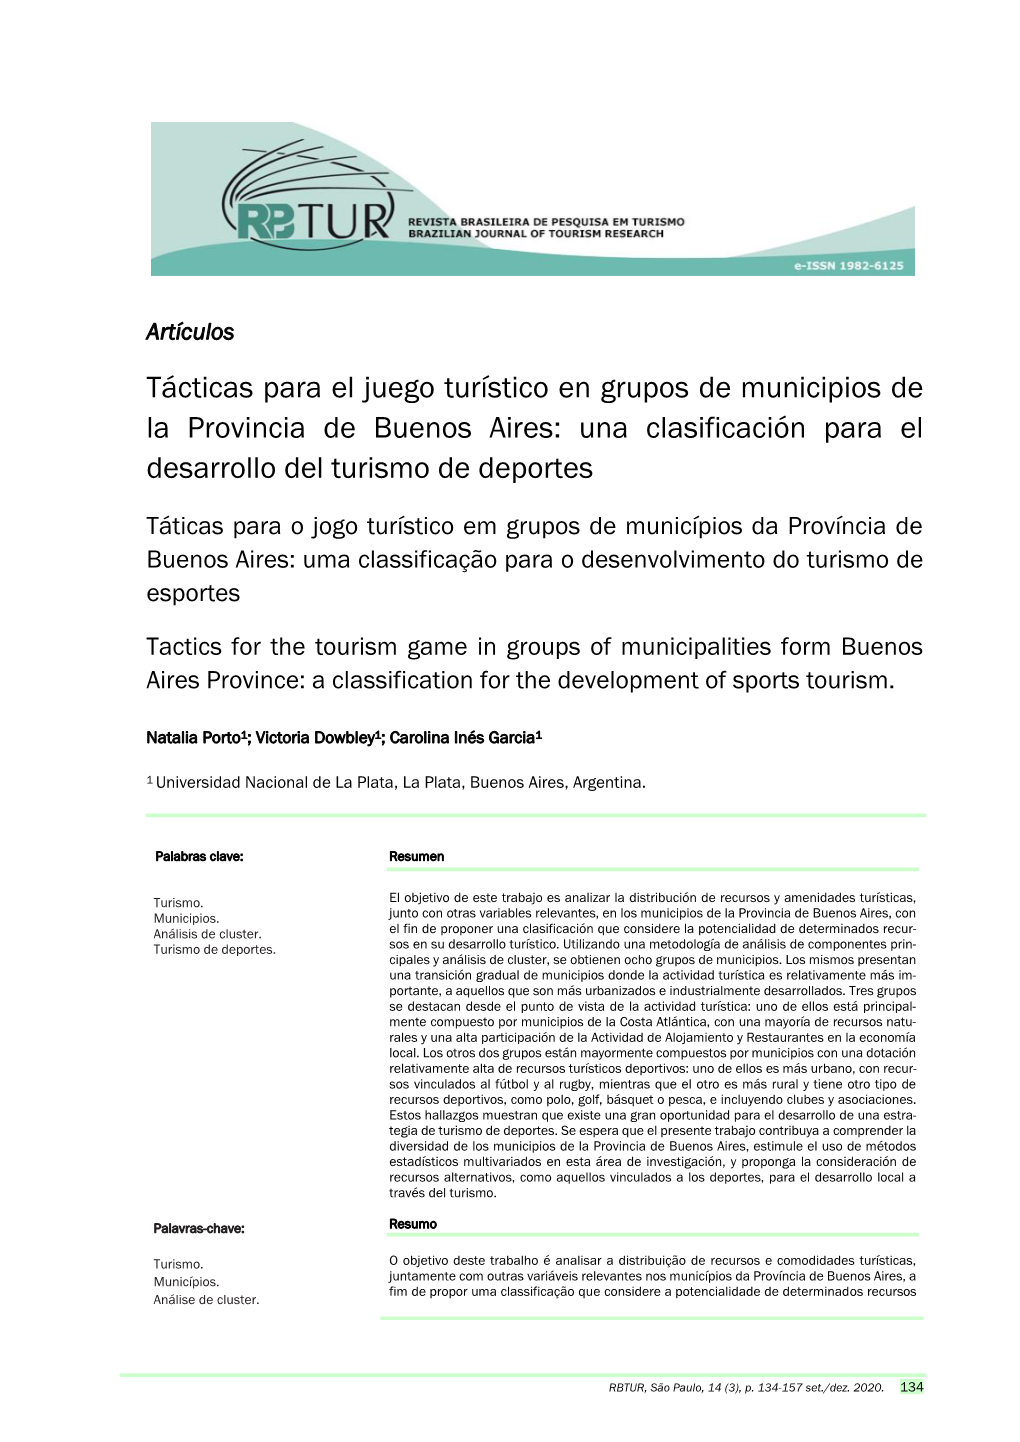 Tácticas Para El Juego Turístico En Grupos De Municipios De La Provincia De Buenos Aires: Una Clasificación Para El Desarrollo Del Turismo De Deportes